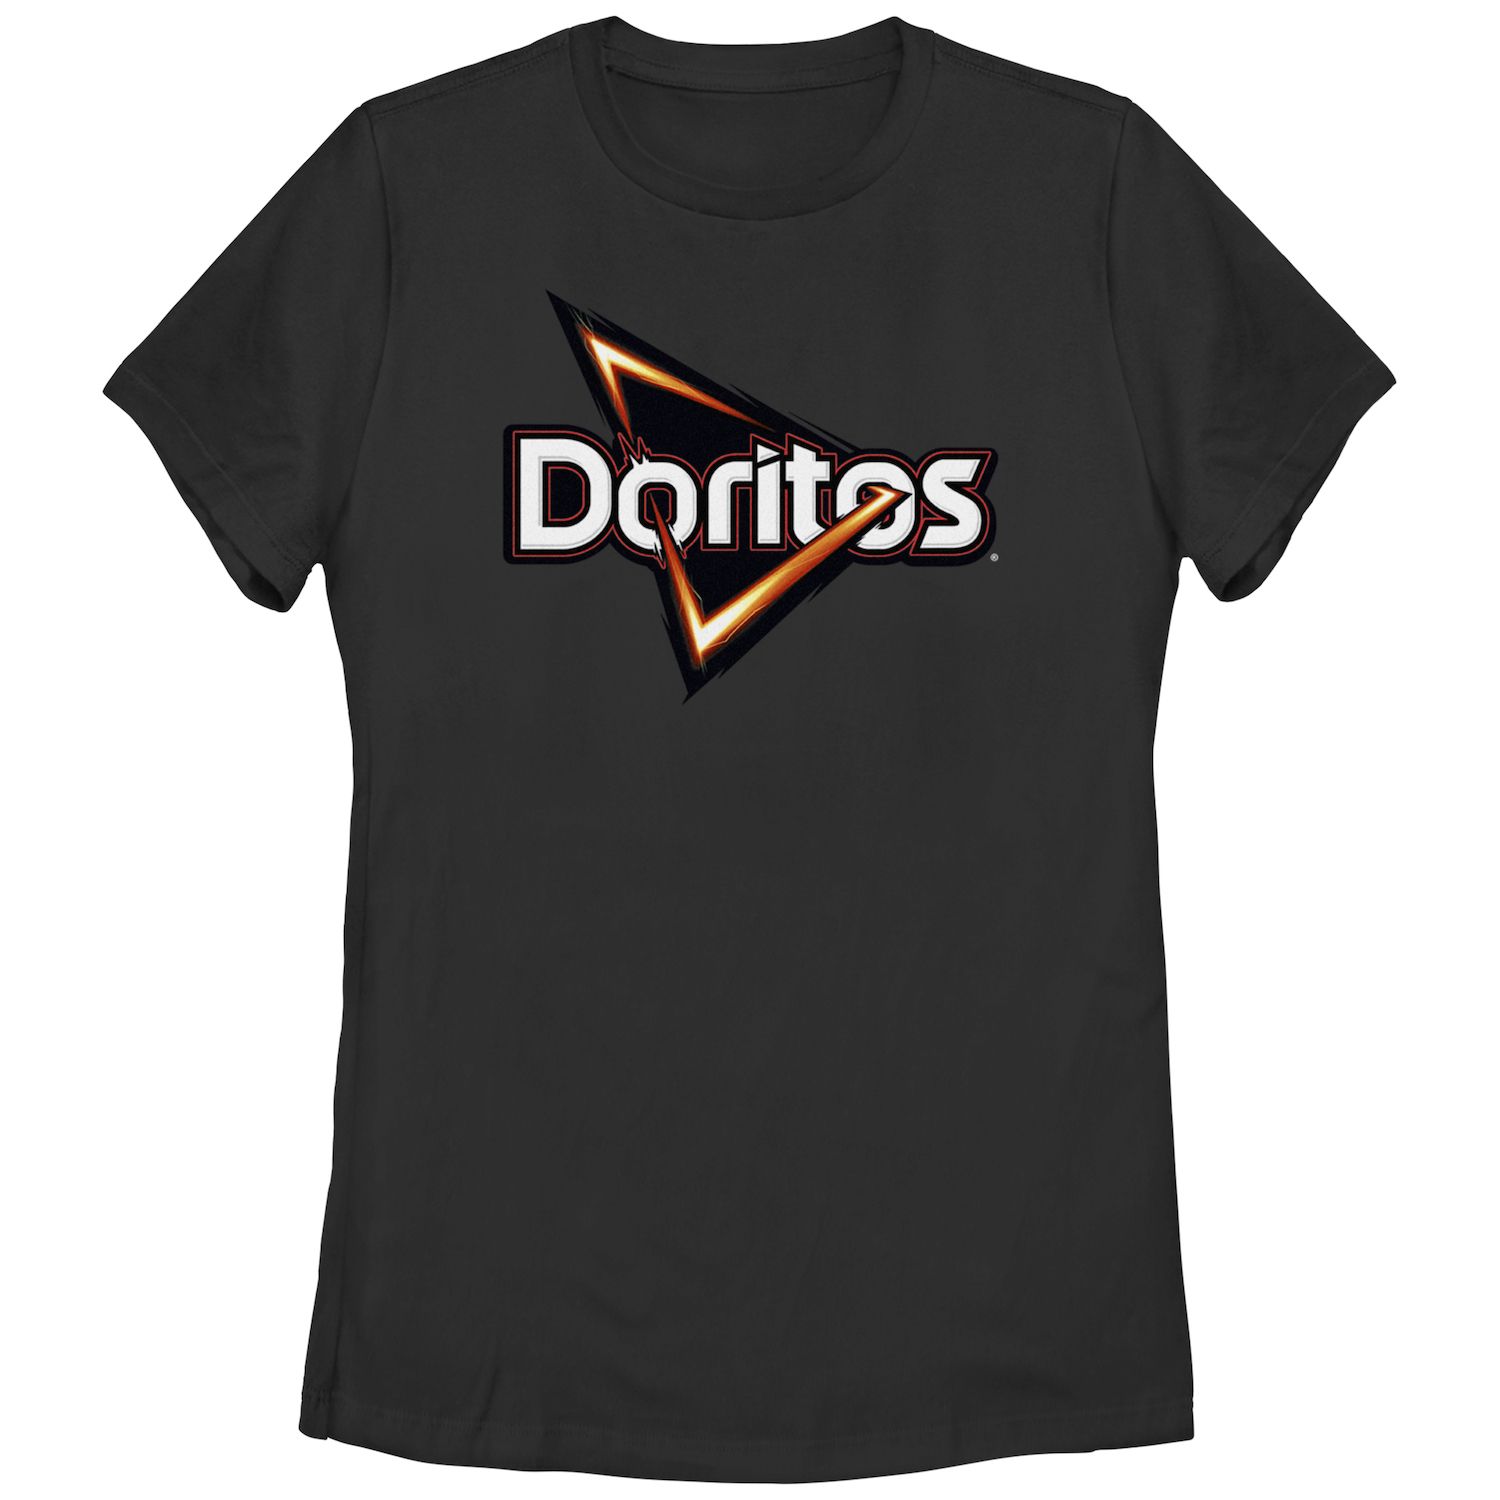 Классическая футболка с логотипом и графическим рисунком Doritos Triangle Chips для юниоров Doritos детская футболка больших размеров doritos sunset в стиле 80 х с v образным вырезом и графикой doritos